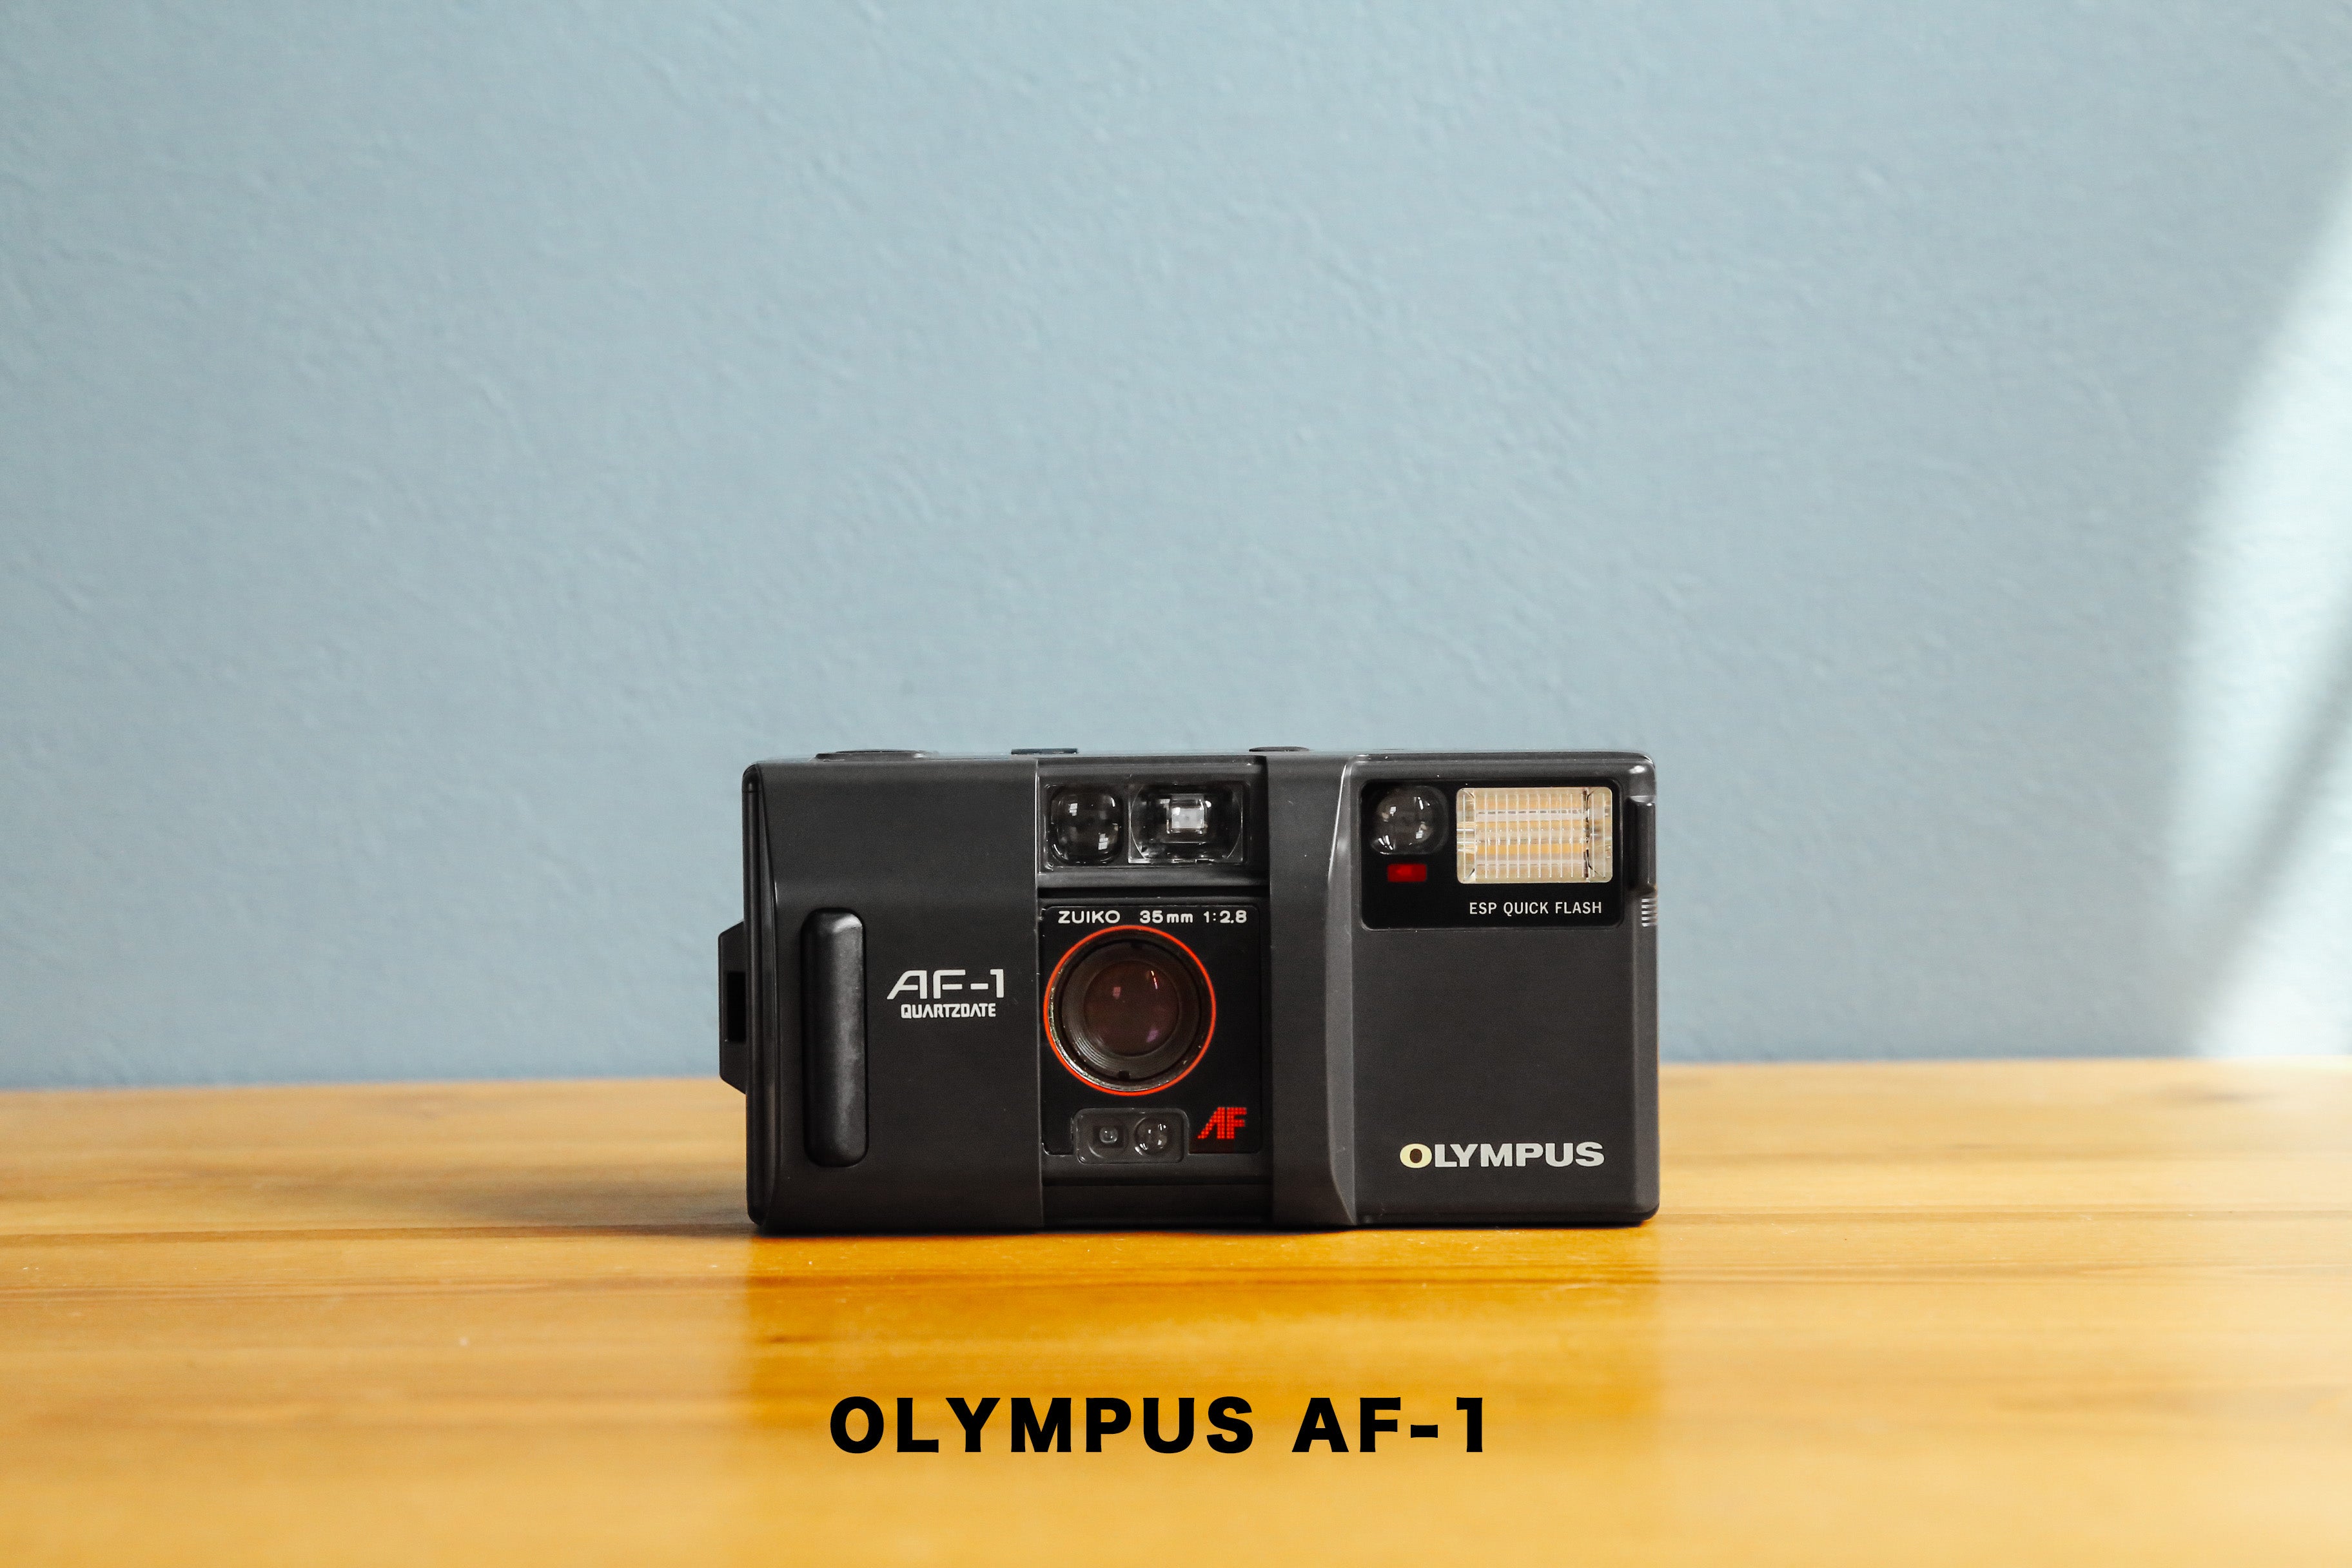 OLYMPUSフィルムカメラ AF-1 TWIN QUARTZ DATE ③ - フィルムカメラ